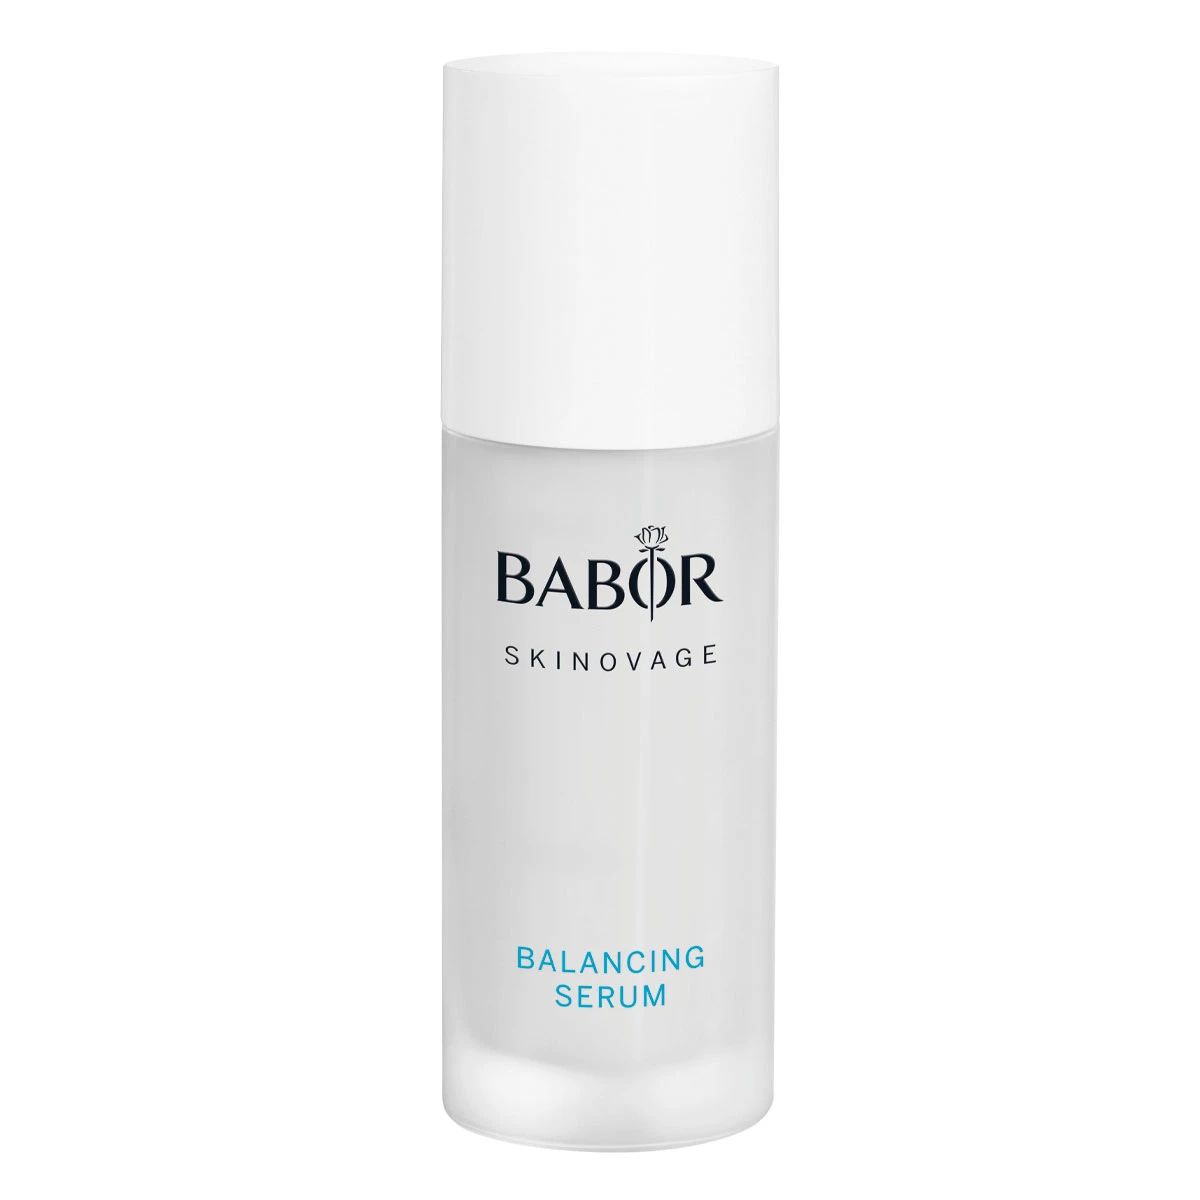 Сыворотка BABOR Skinovage Balancing Serum для комбинированной кожи 30 мл